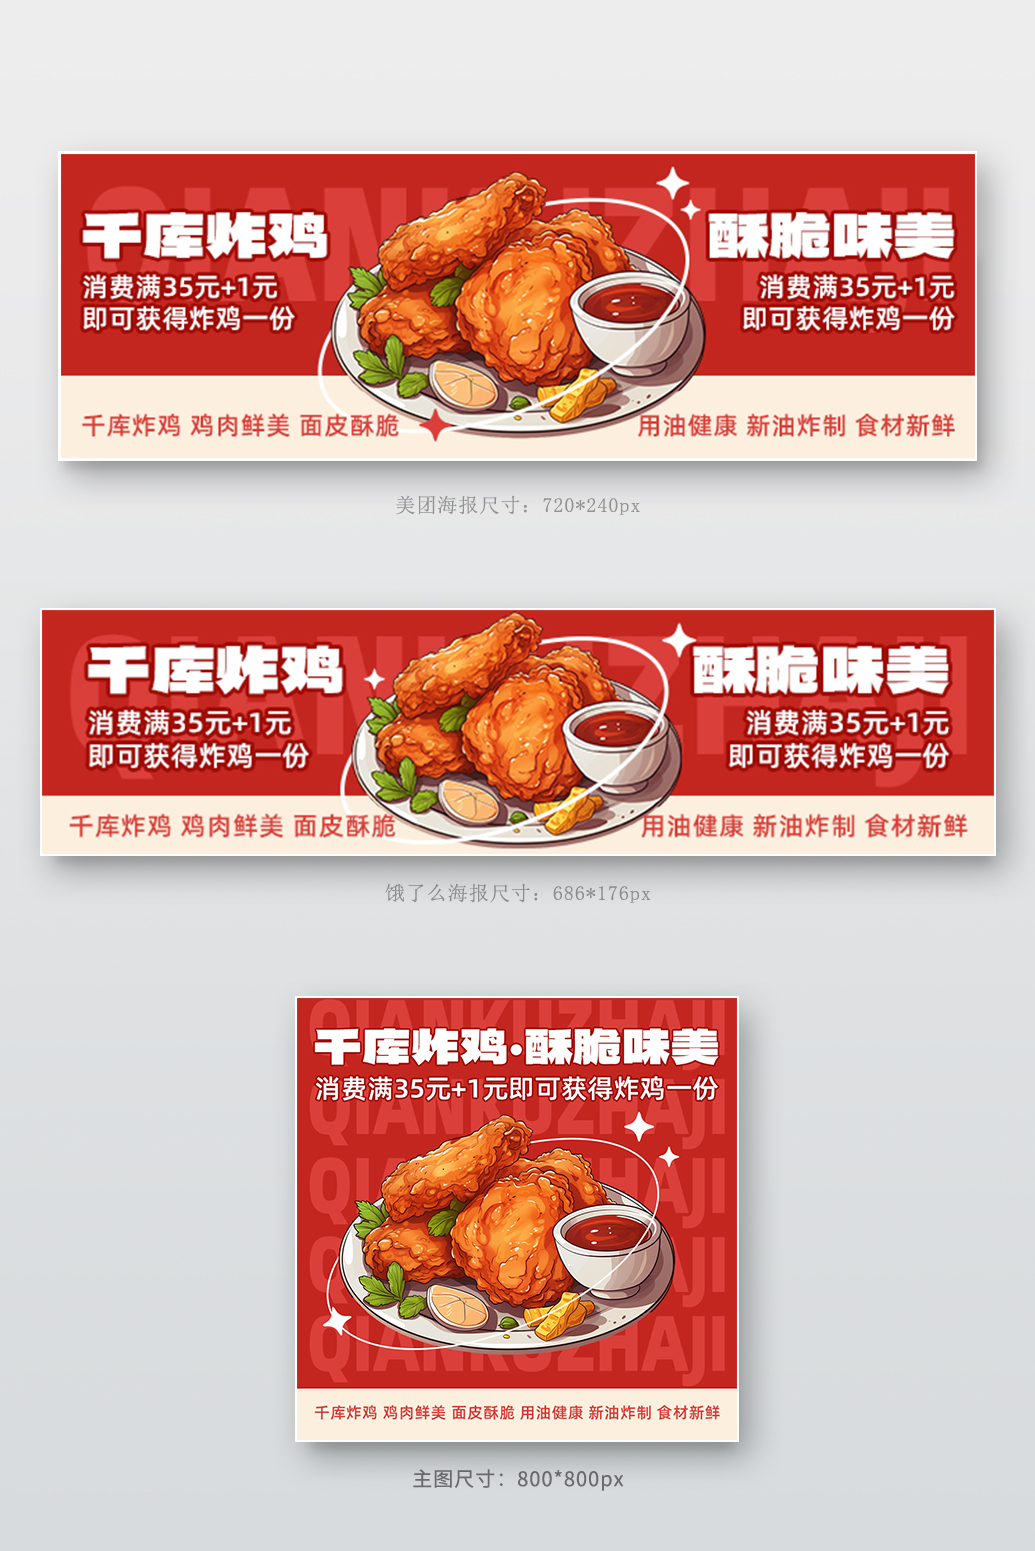 外卖店招炸鸡红简约电商长图海报模版商务模版图片